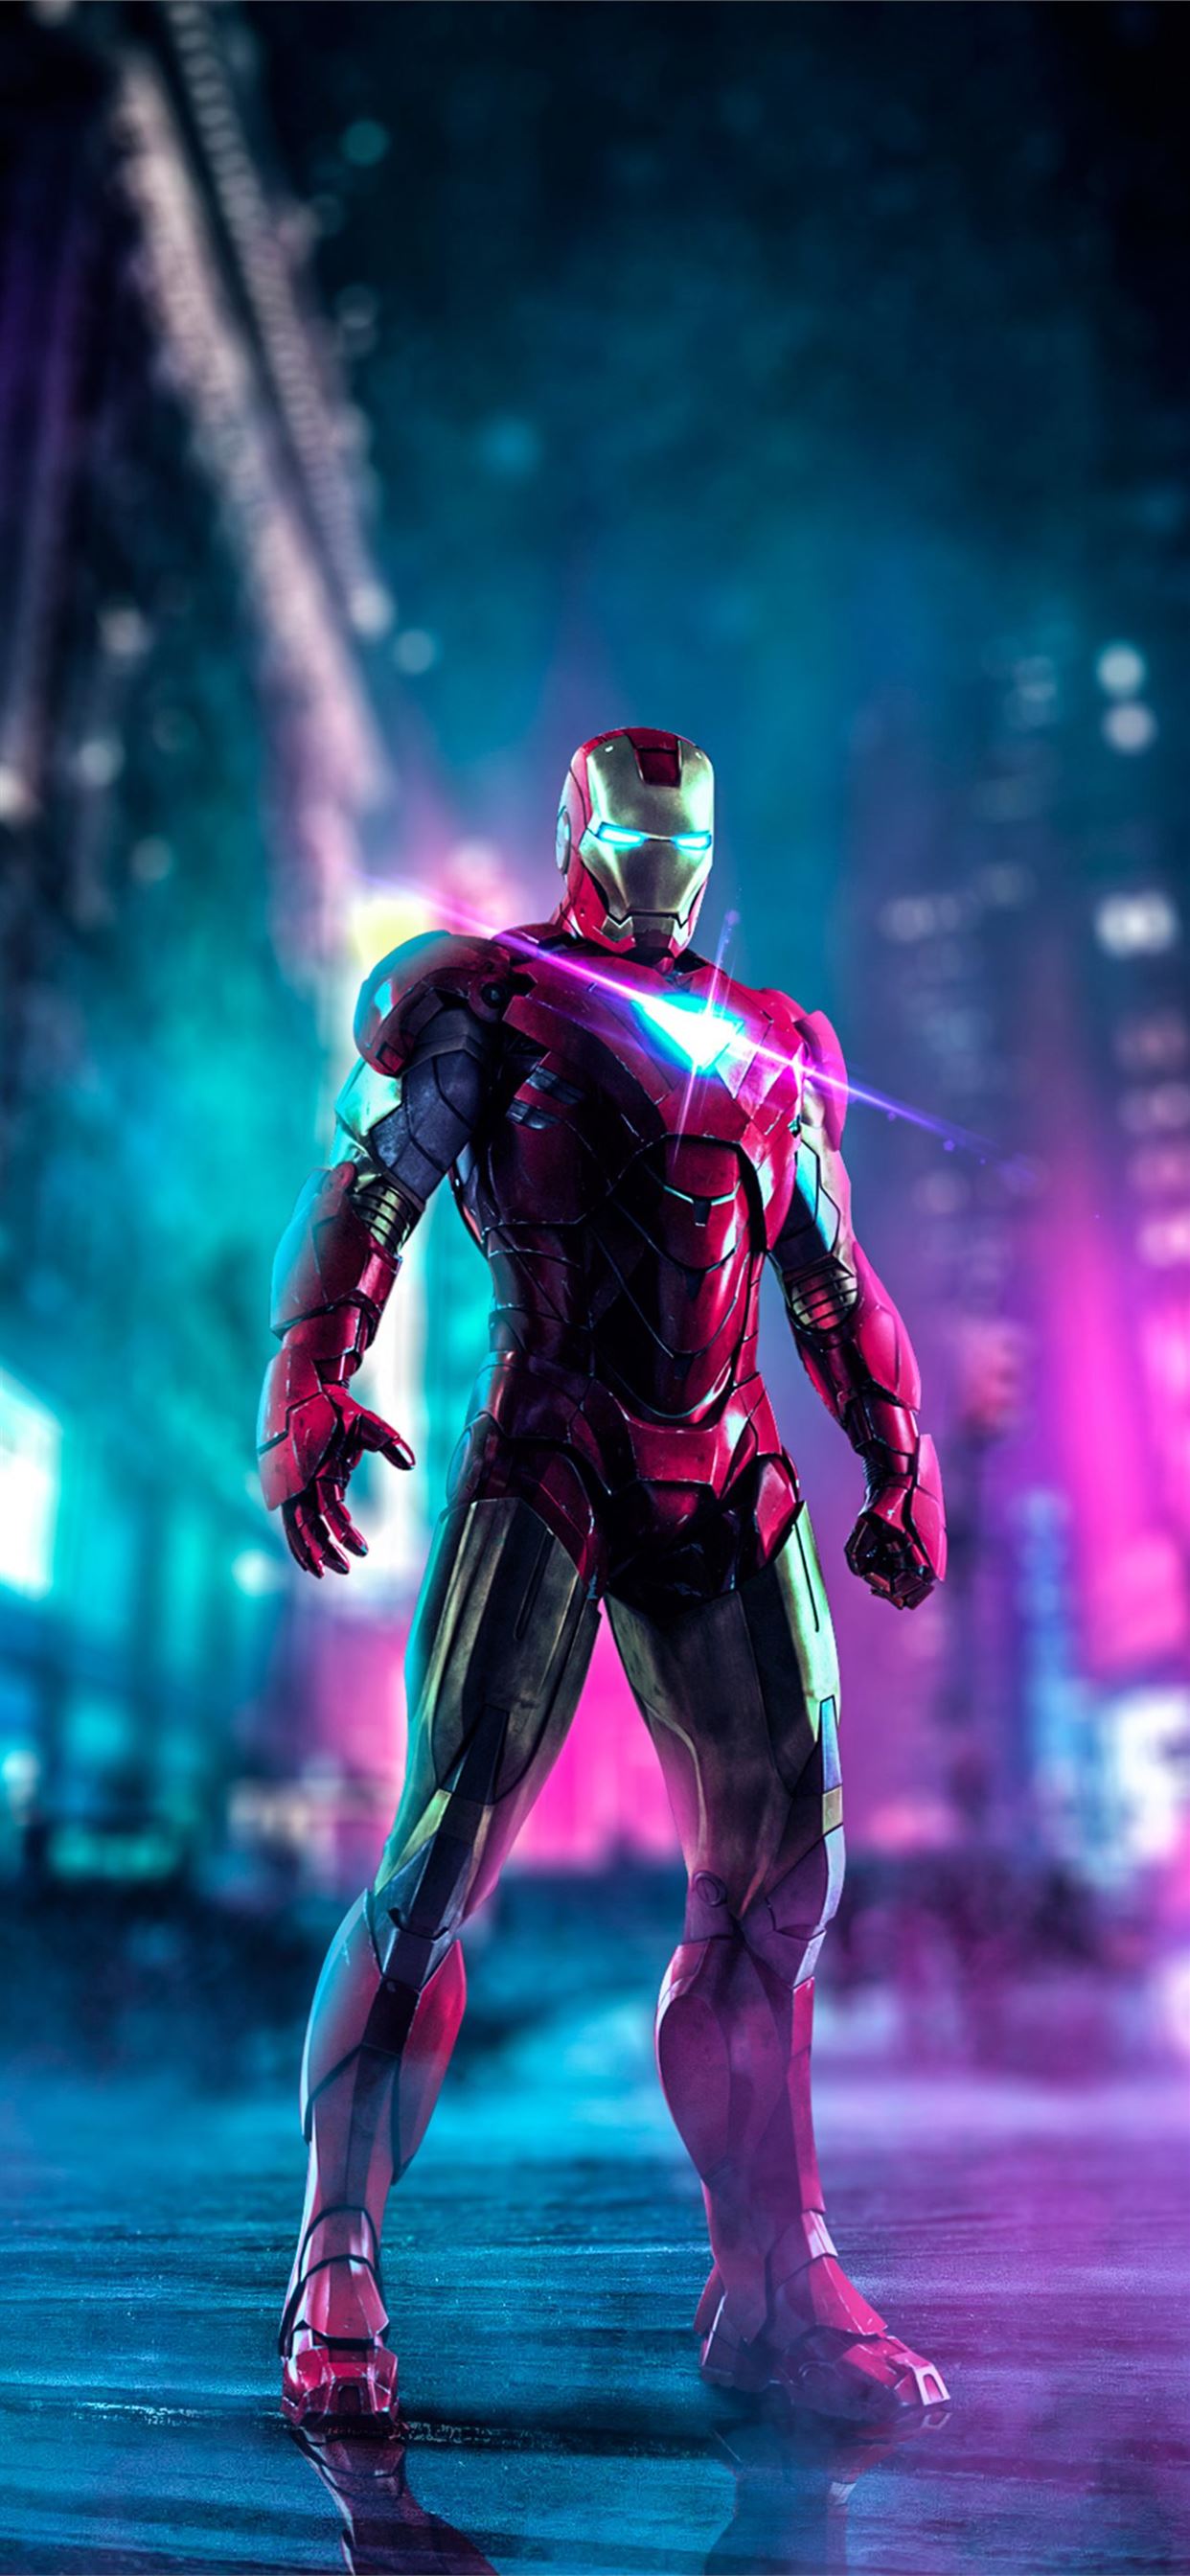 Hình nền Iron Man 3 iPhone miễn phí sẽ khiến bạn như đang xem phim trên màn hình của mình. Bạn sẽ được trở thành người hùng với chiếc áo giáp sắt của riêng mình. Tải ngay để có trải nghiệm tuyệt vời này!